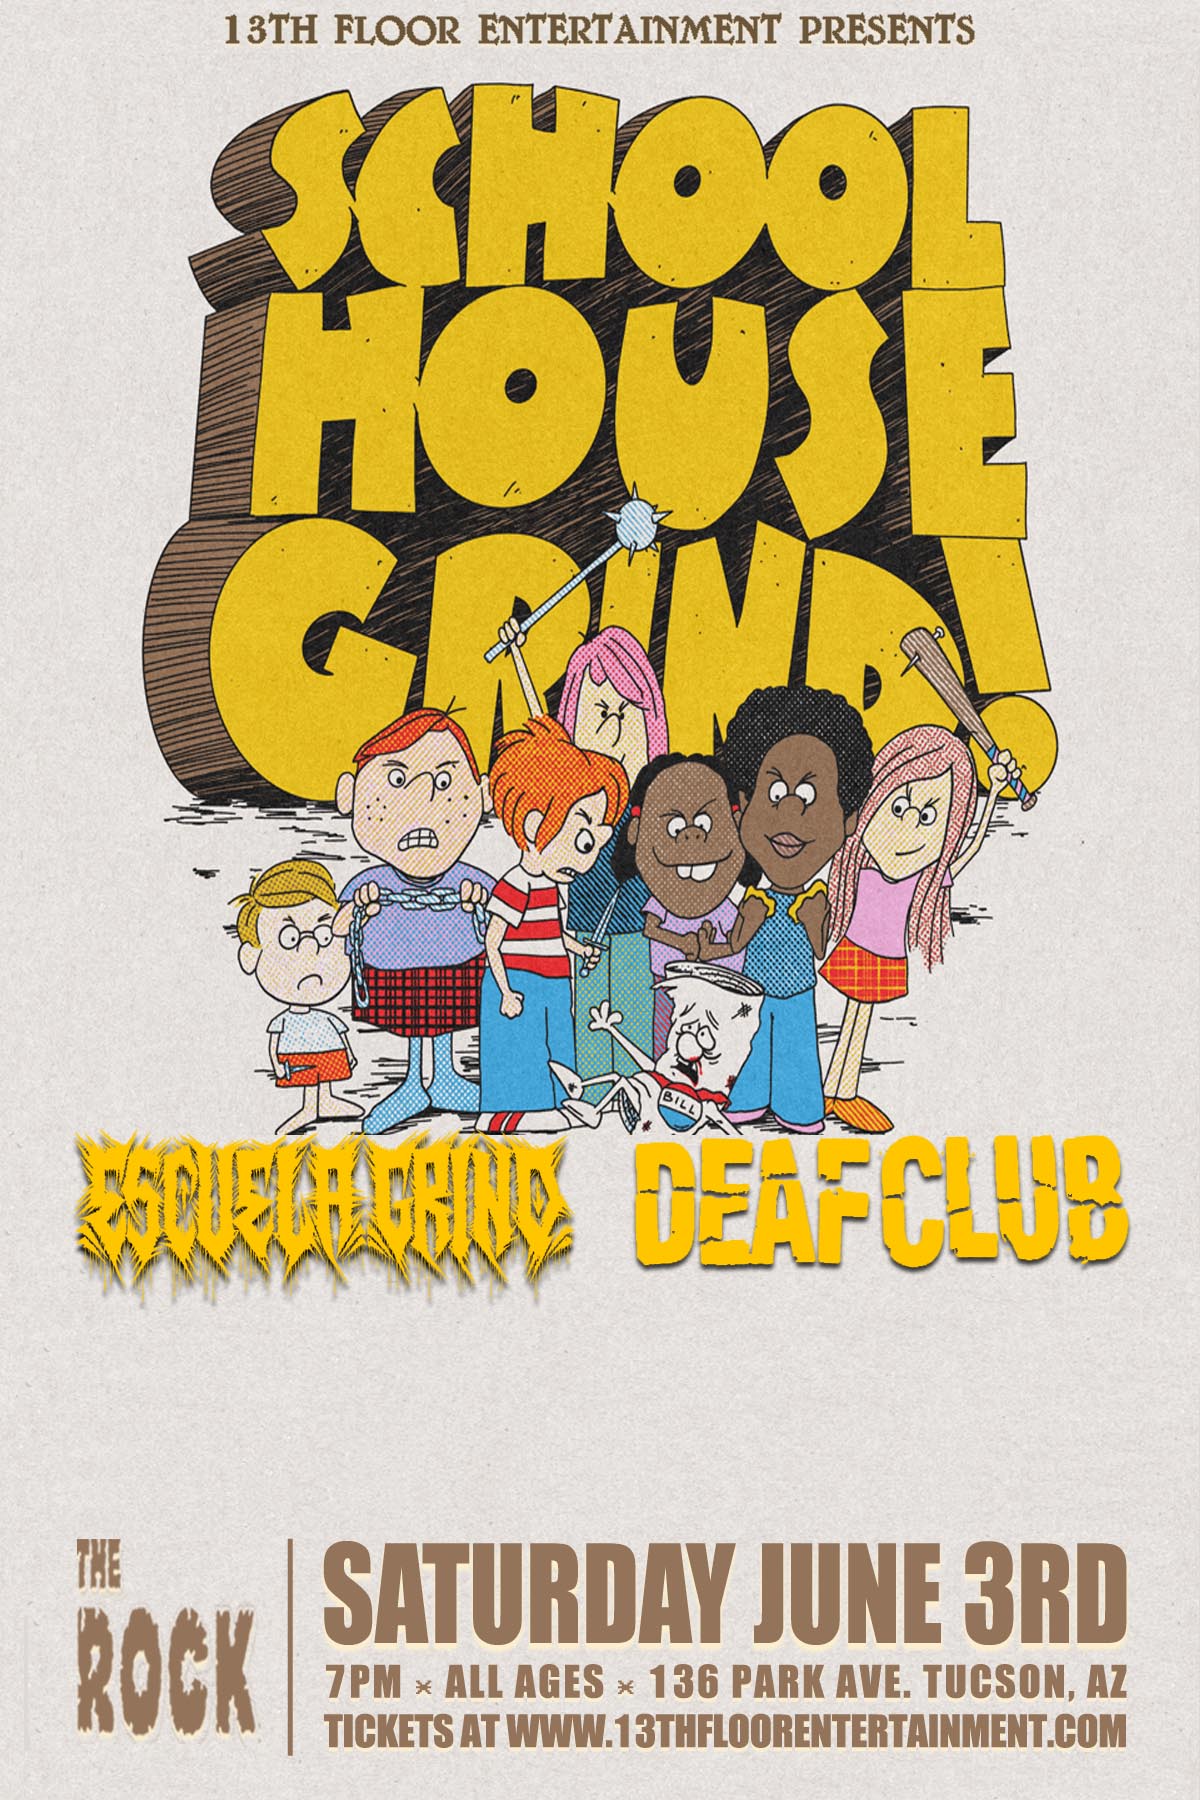 Escuela Grind/Deaf Club